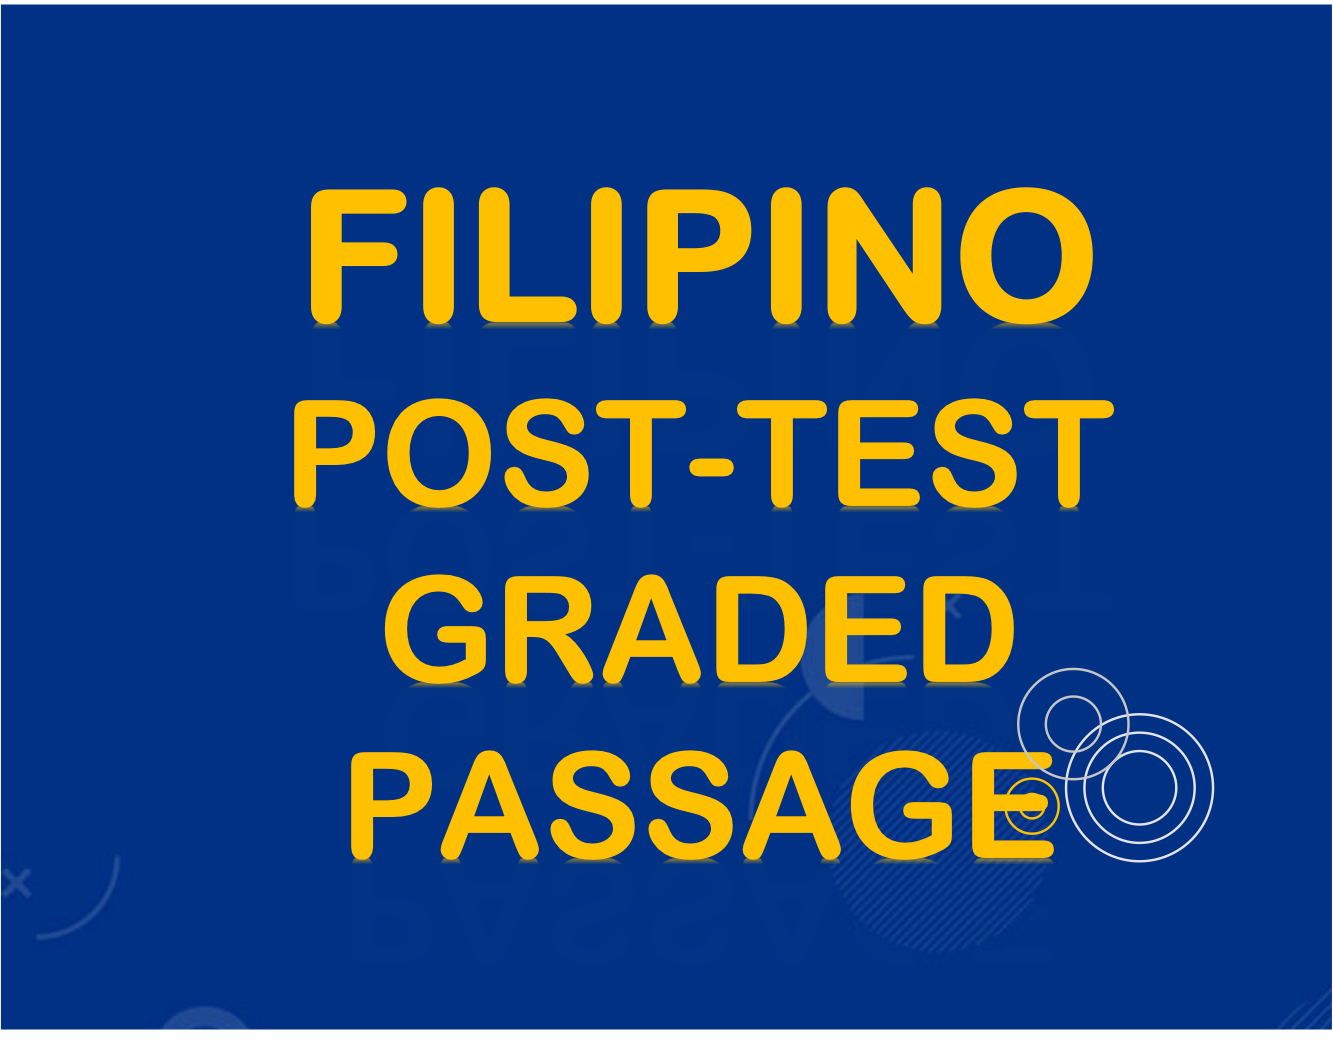 FILIPINO POST- TEST PASSAGE SET 